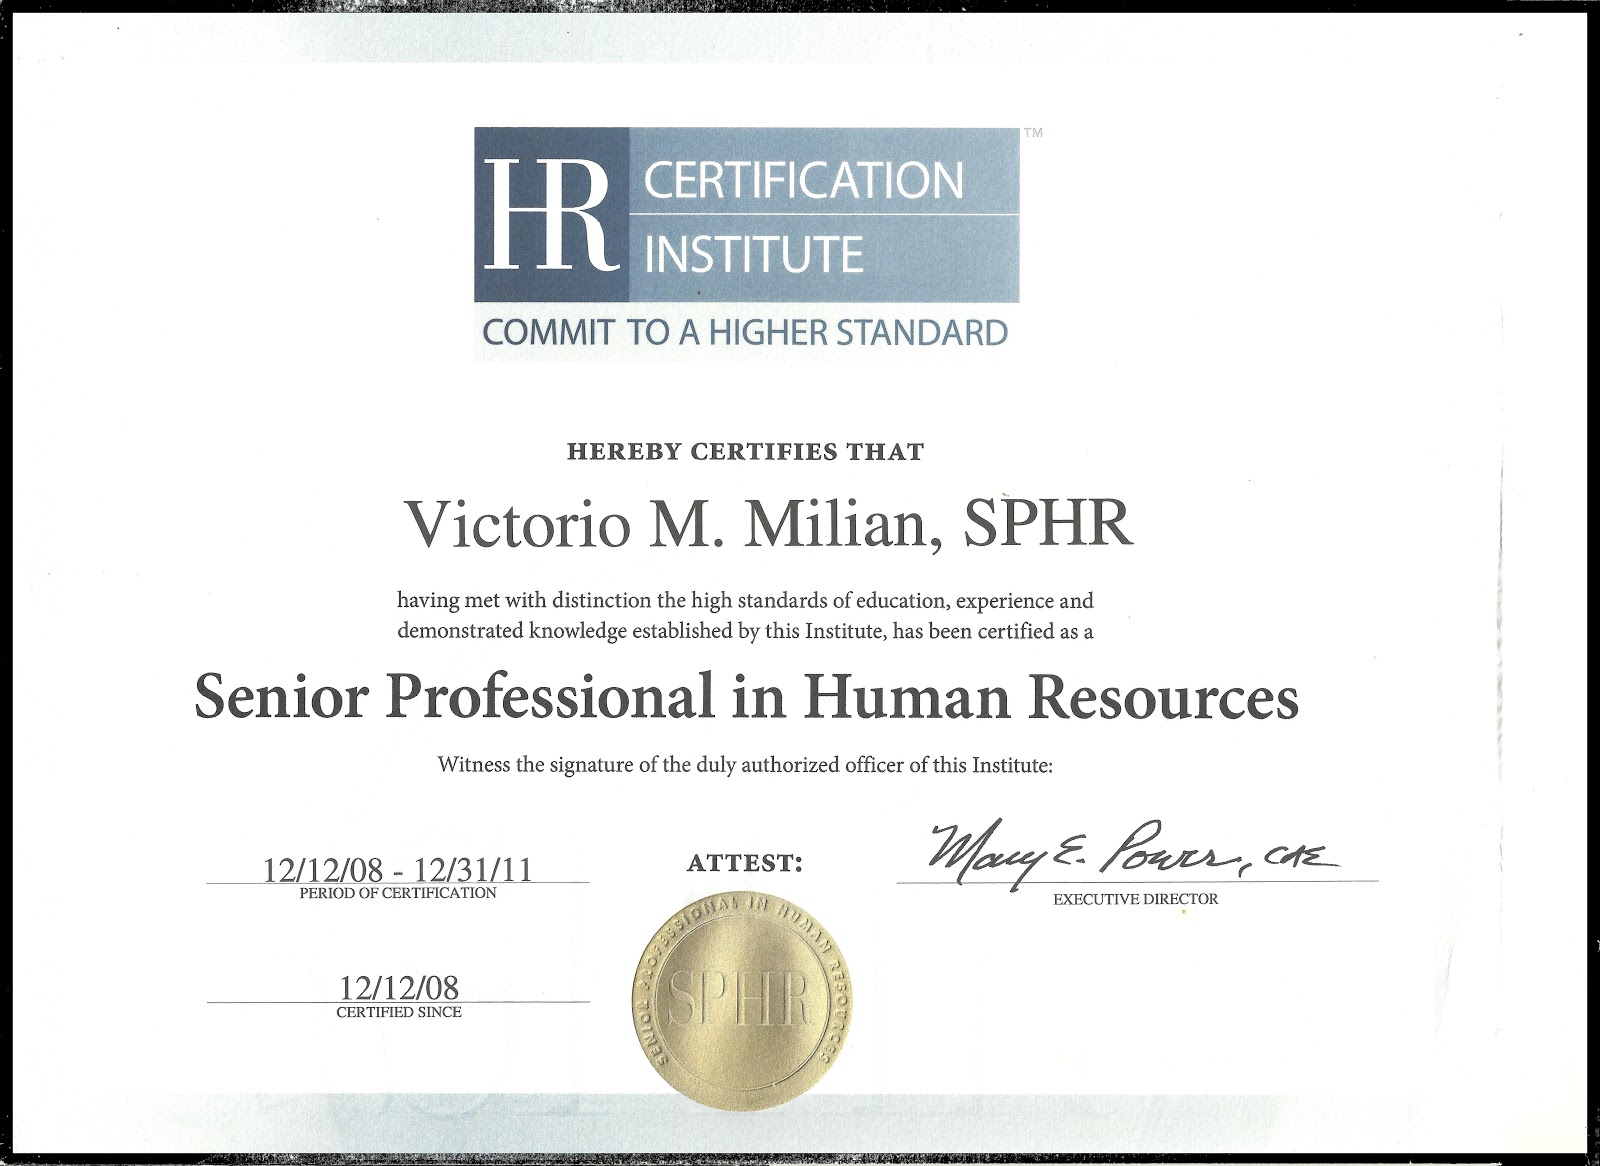 Hr certification | Peatix